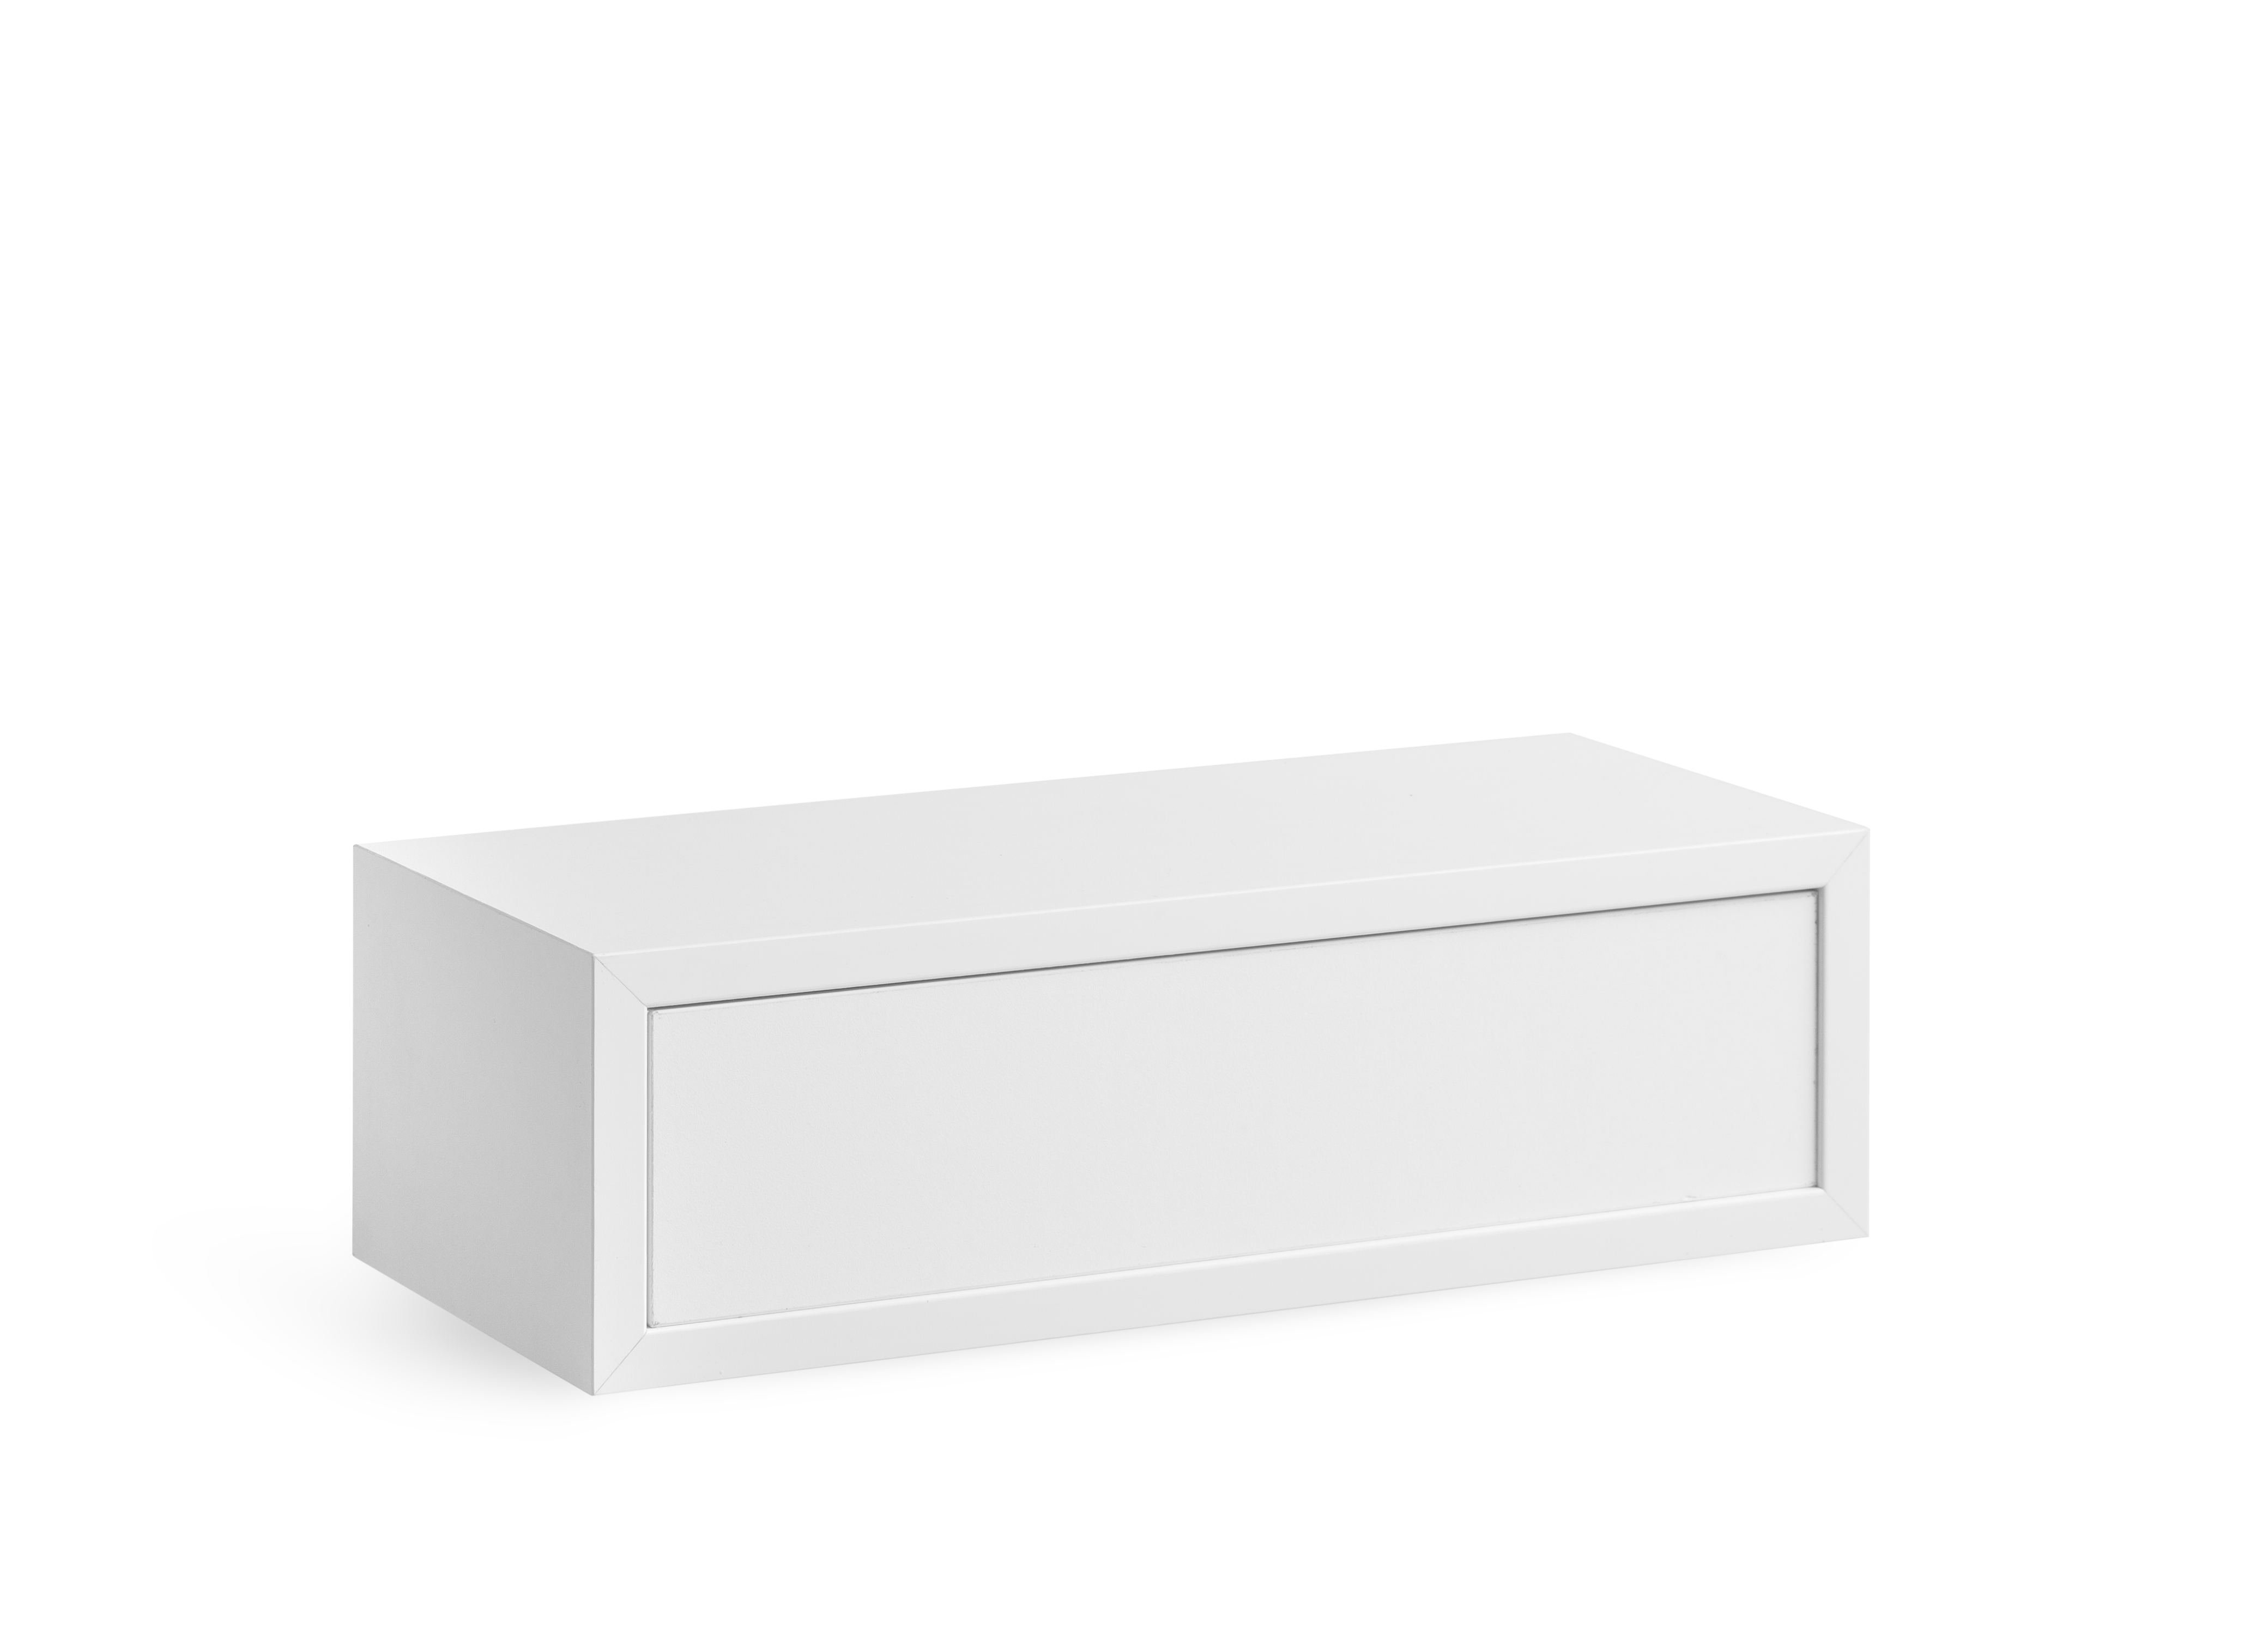 Cube de rangement bois 100x50 cm + tiroir Gris / argent